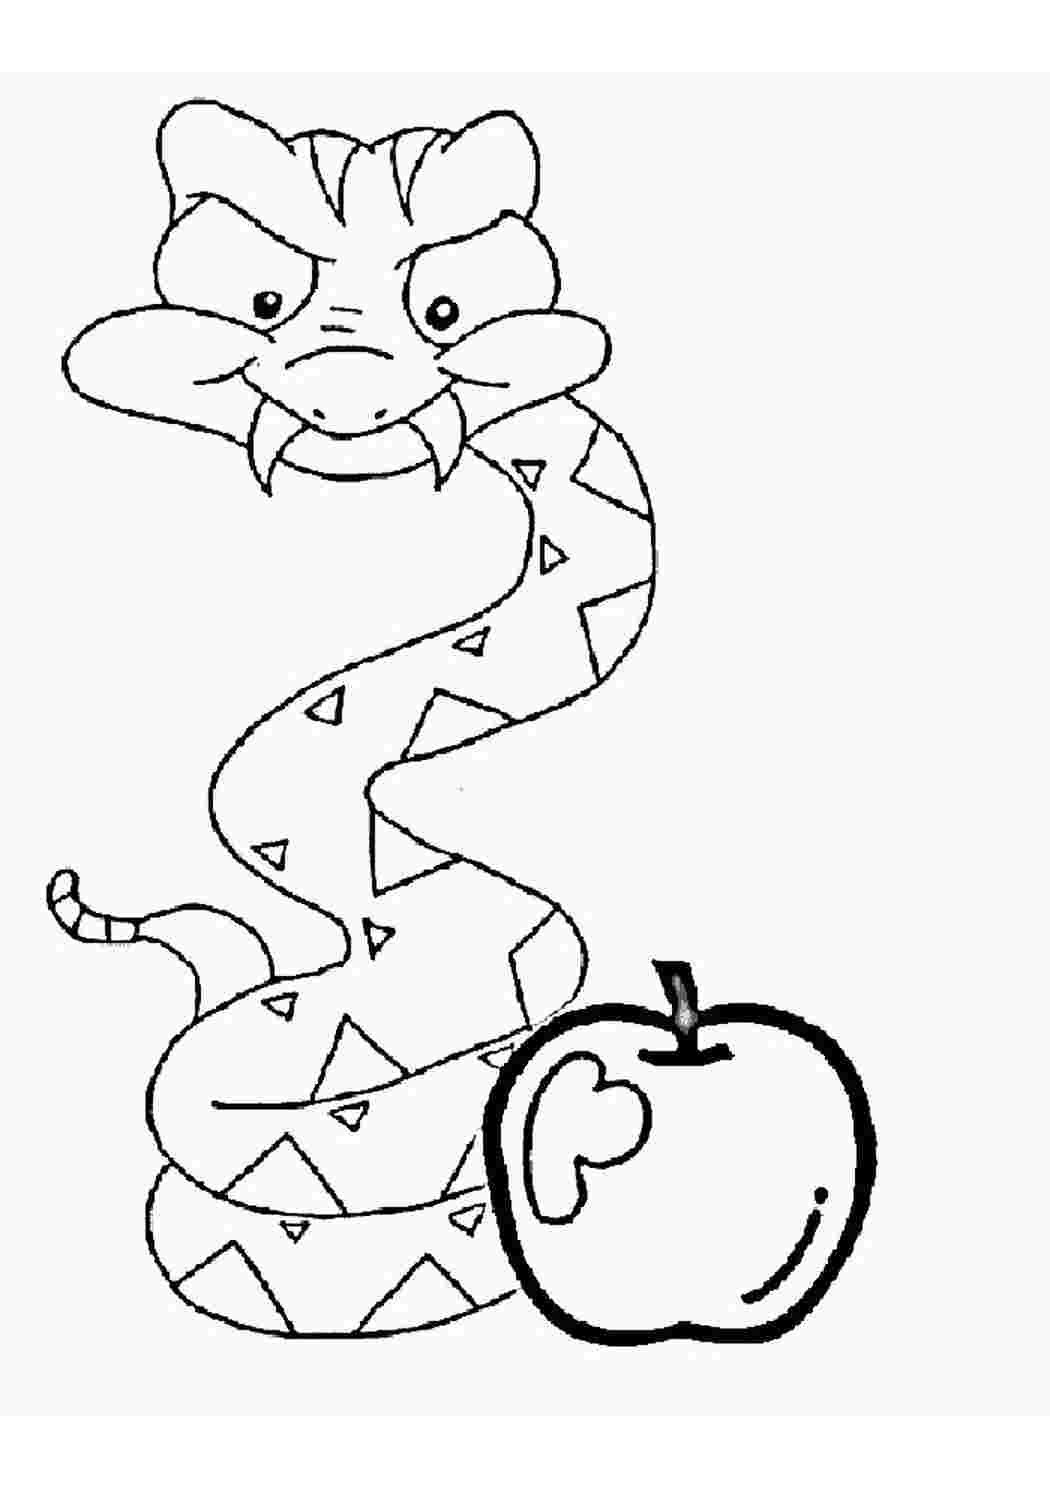 Игрушка-змея раскраска для детей